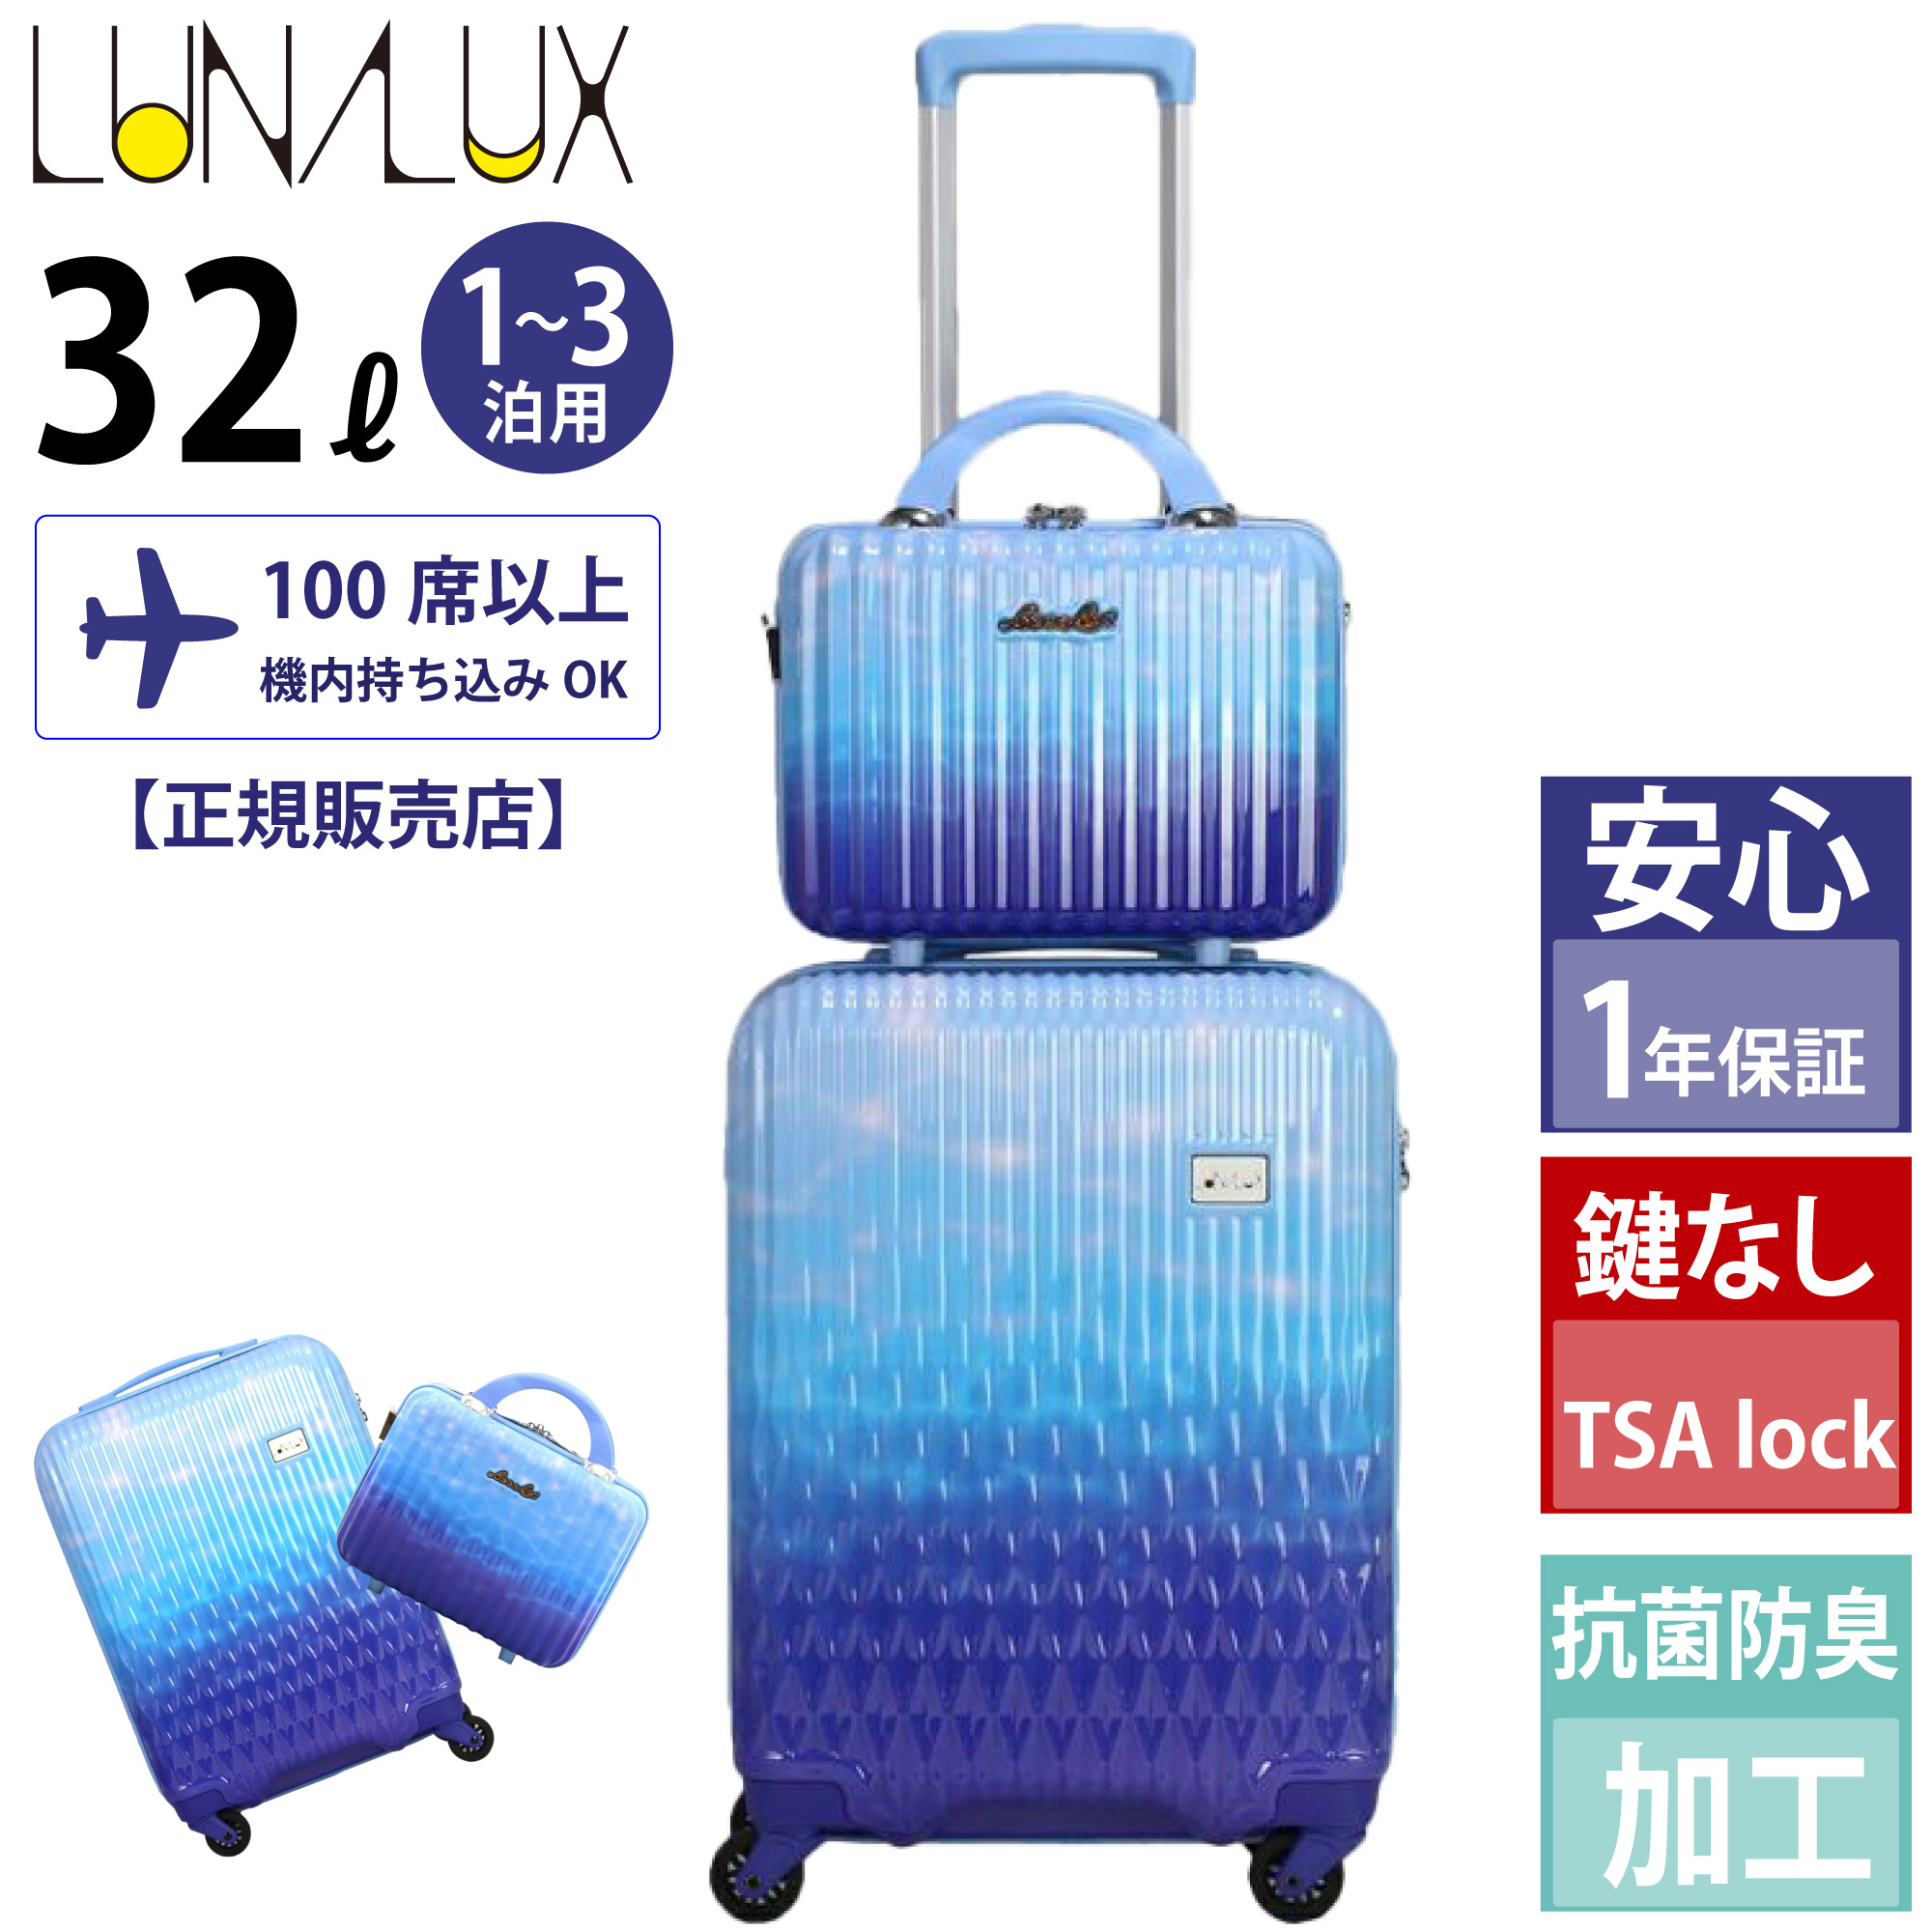 抗菌 スーツケース レディース ルナルクス キャリーケース 機内持ち込み かわいい 軽量 TSAロック LUNALUX 32L 1〜3泊  LUN2116K-48 母の日